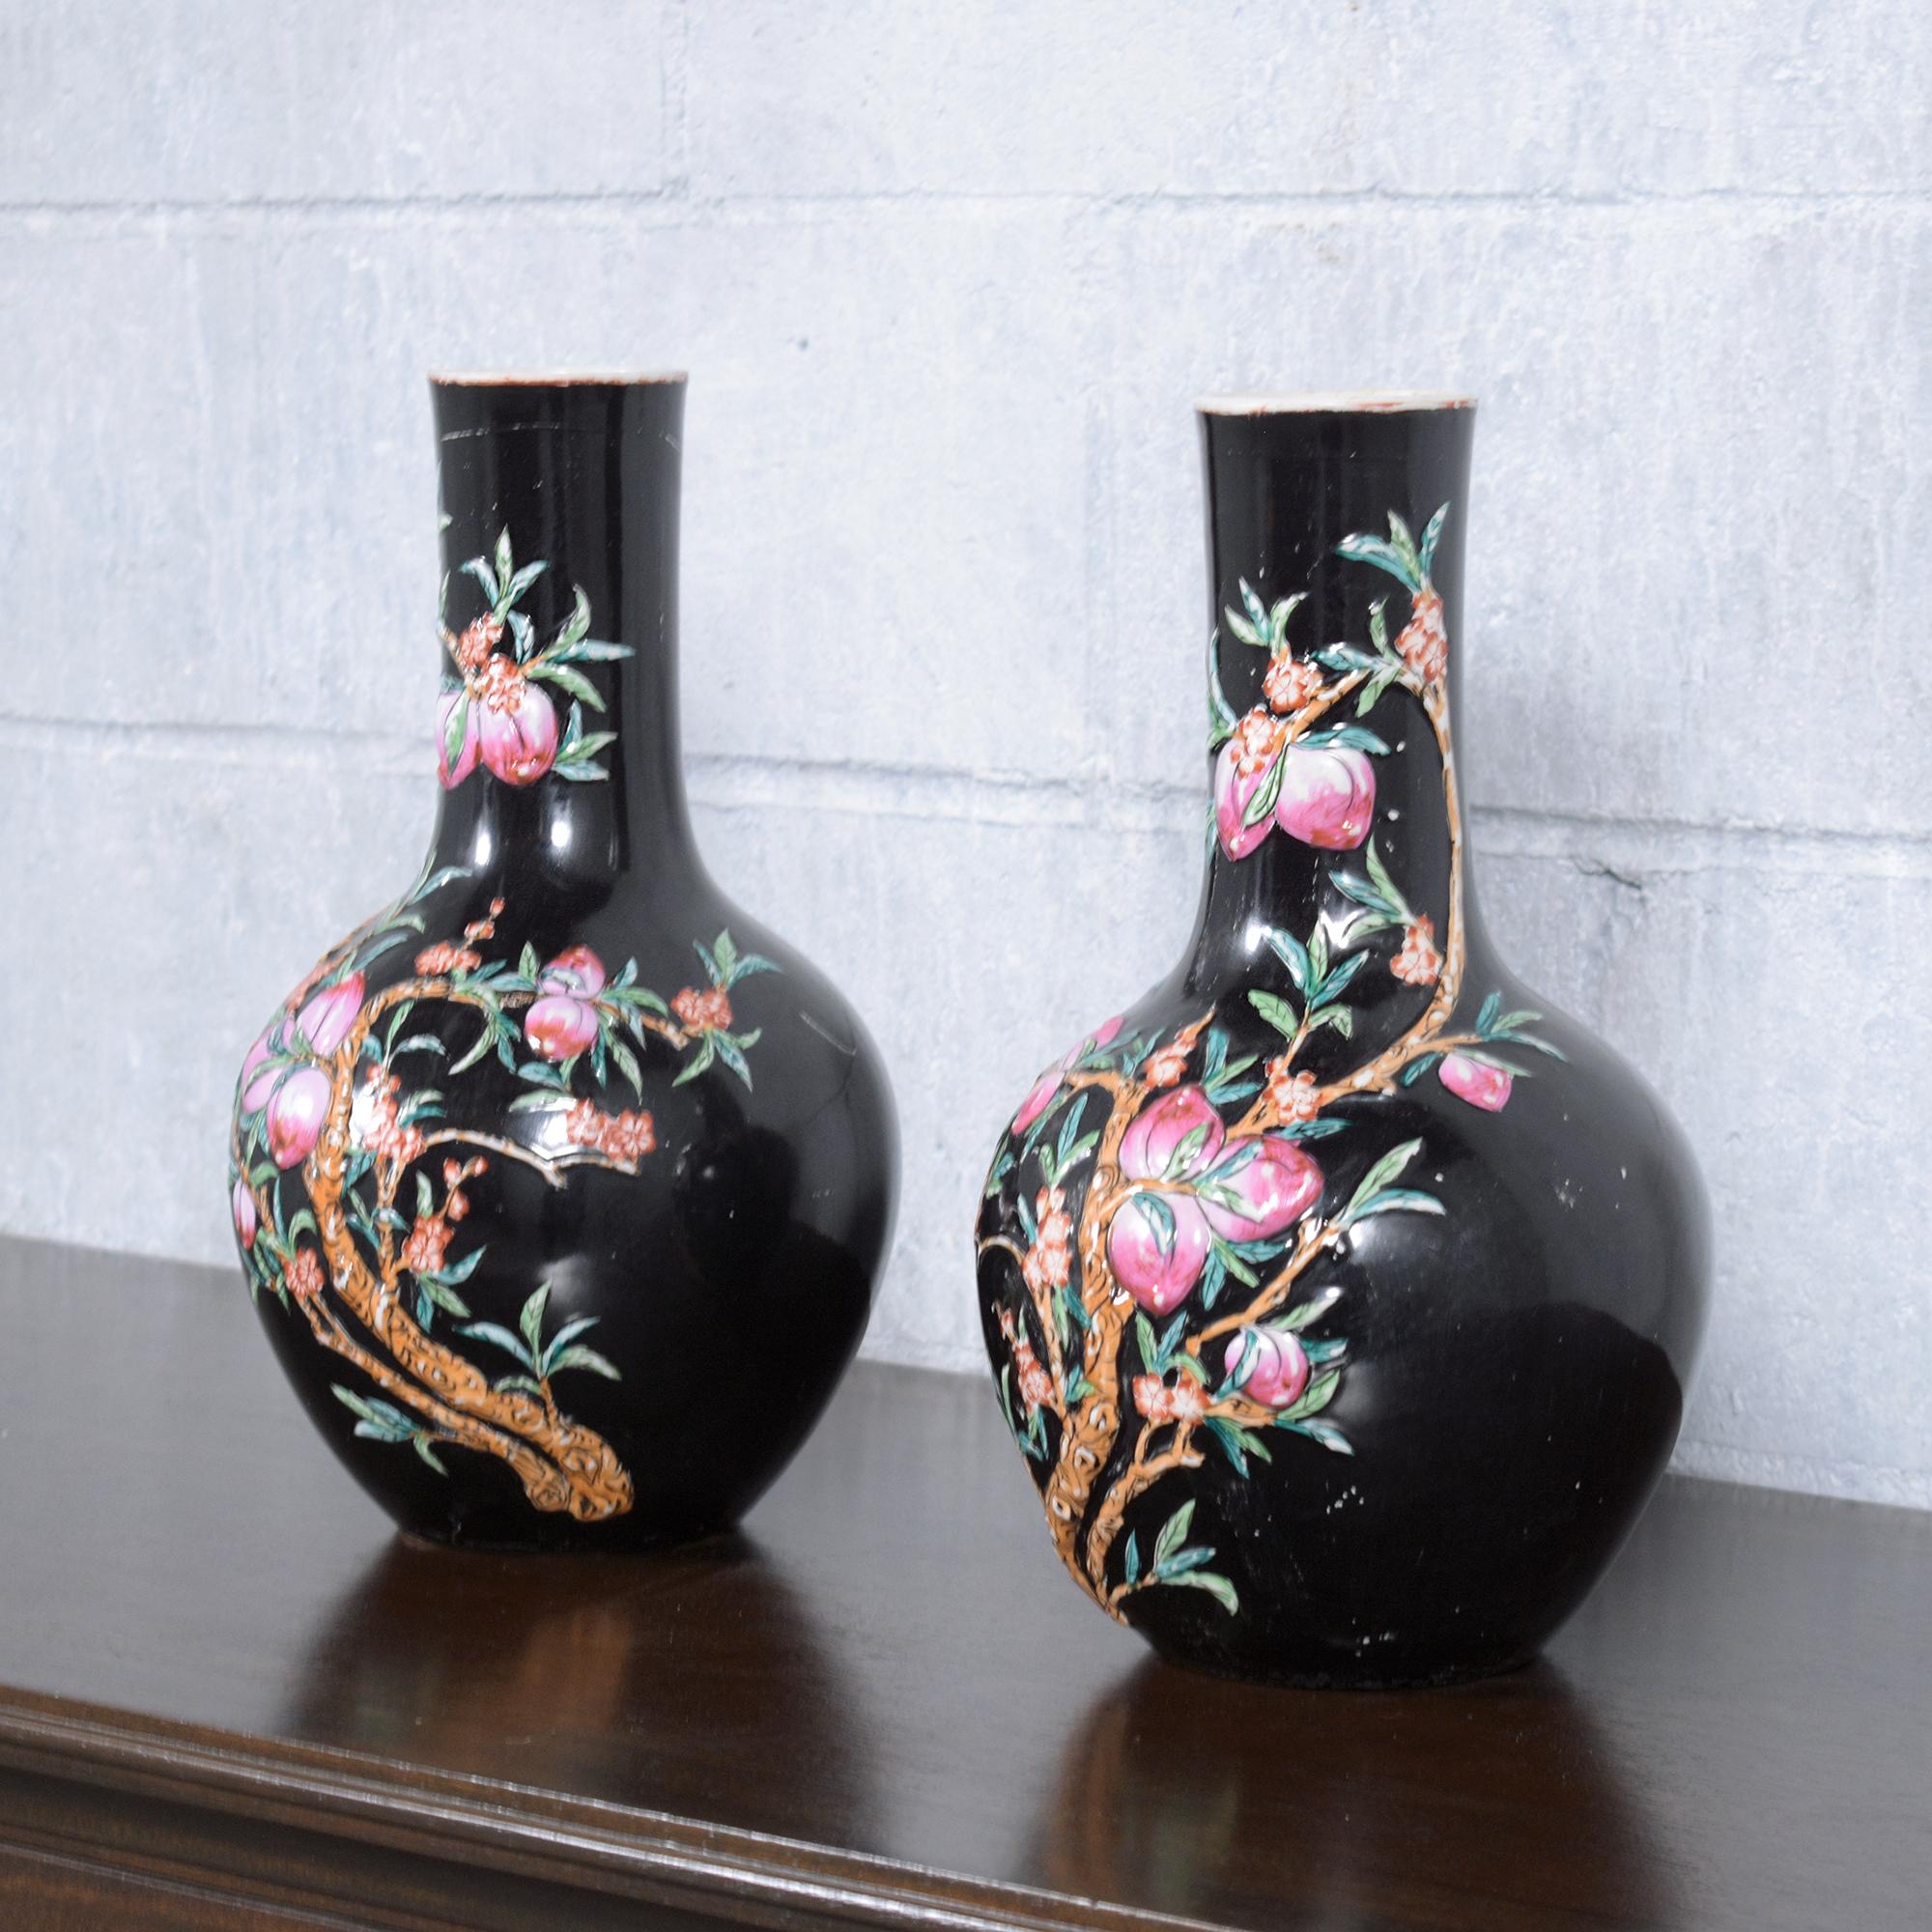 Découvrez le charme et la beauté de l'art chinois traditionnel avec notre paire de vases vintage en porcelaine chinoise. Ces pièces exquises sont en bon état et présentent la finesse et les détails caractéristiques de la porcelaine chinoise